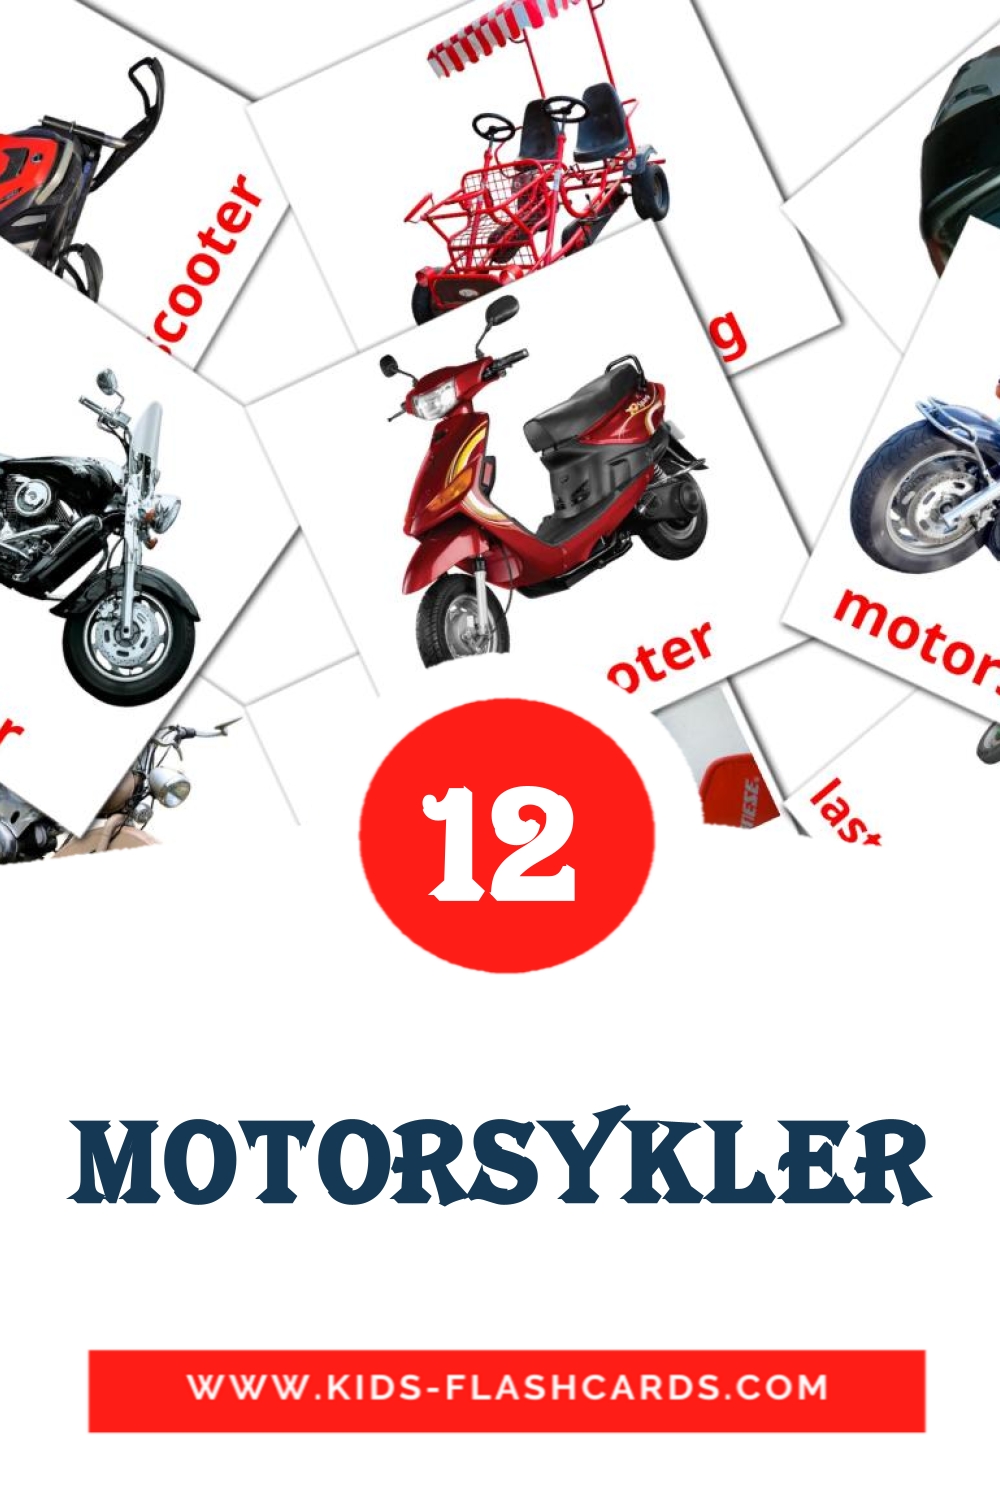 12 Motorsykler fotokaarten voor kleuters in het noors